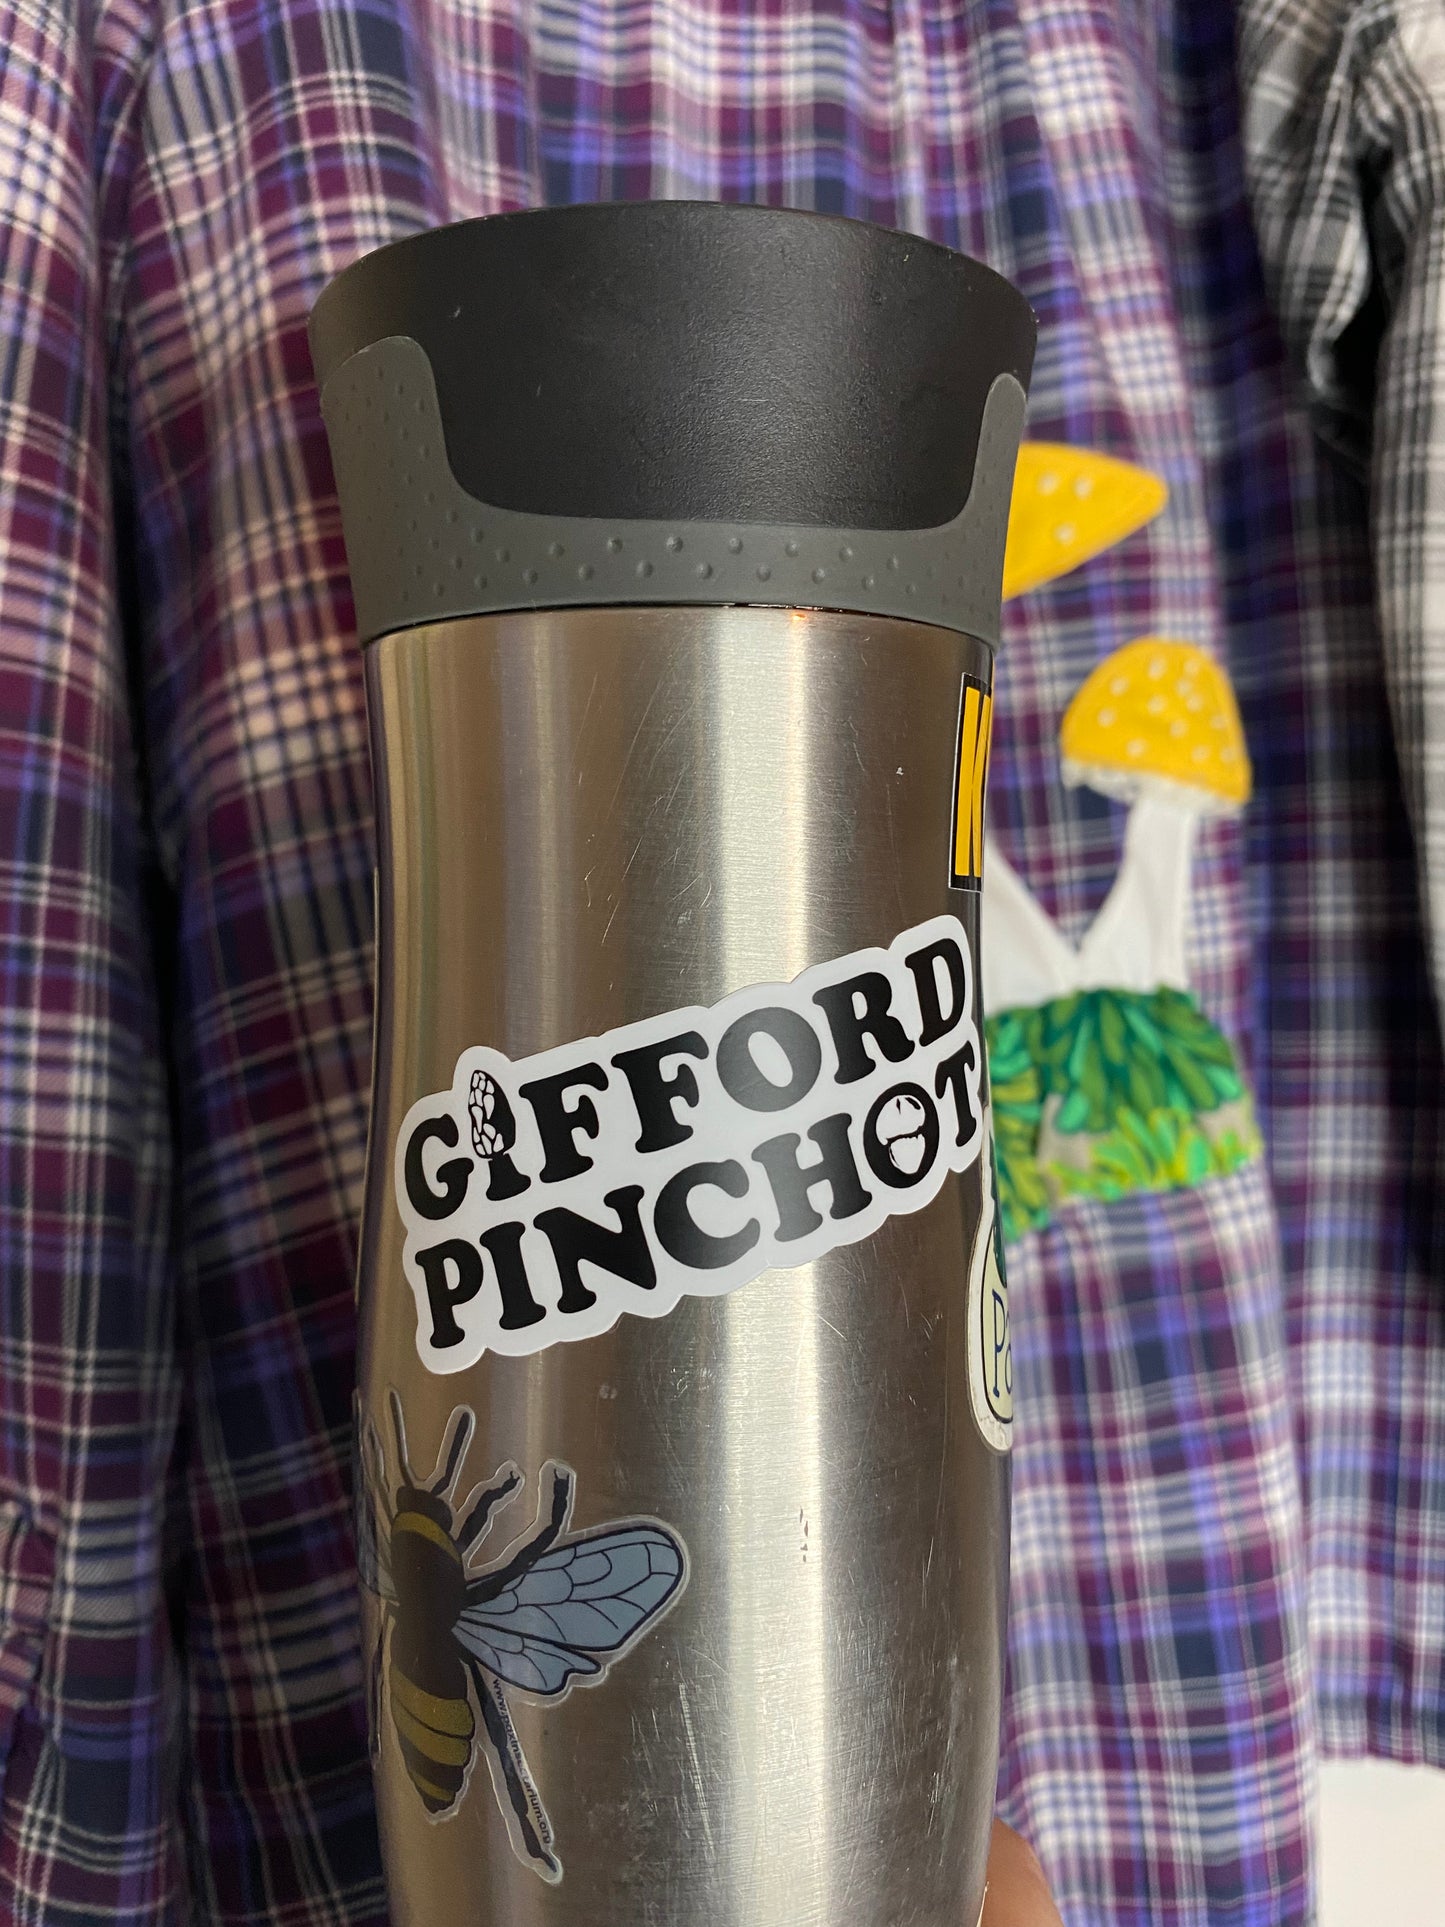 Gifford Pinchot vinyl sticker